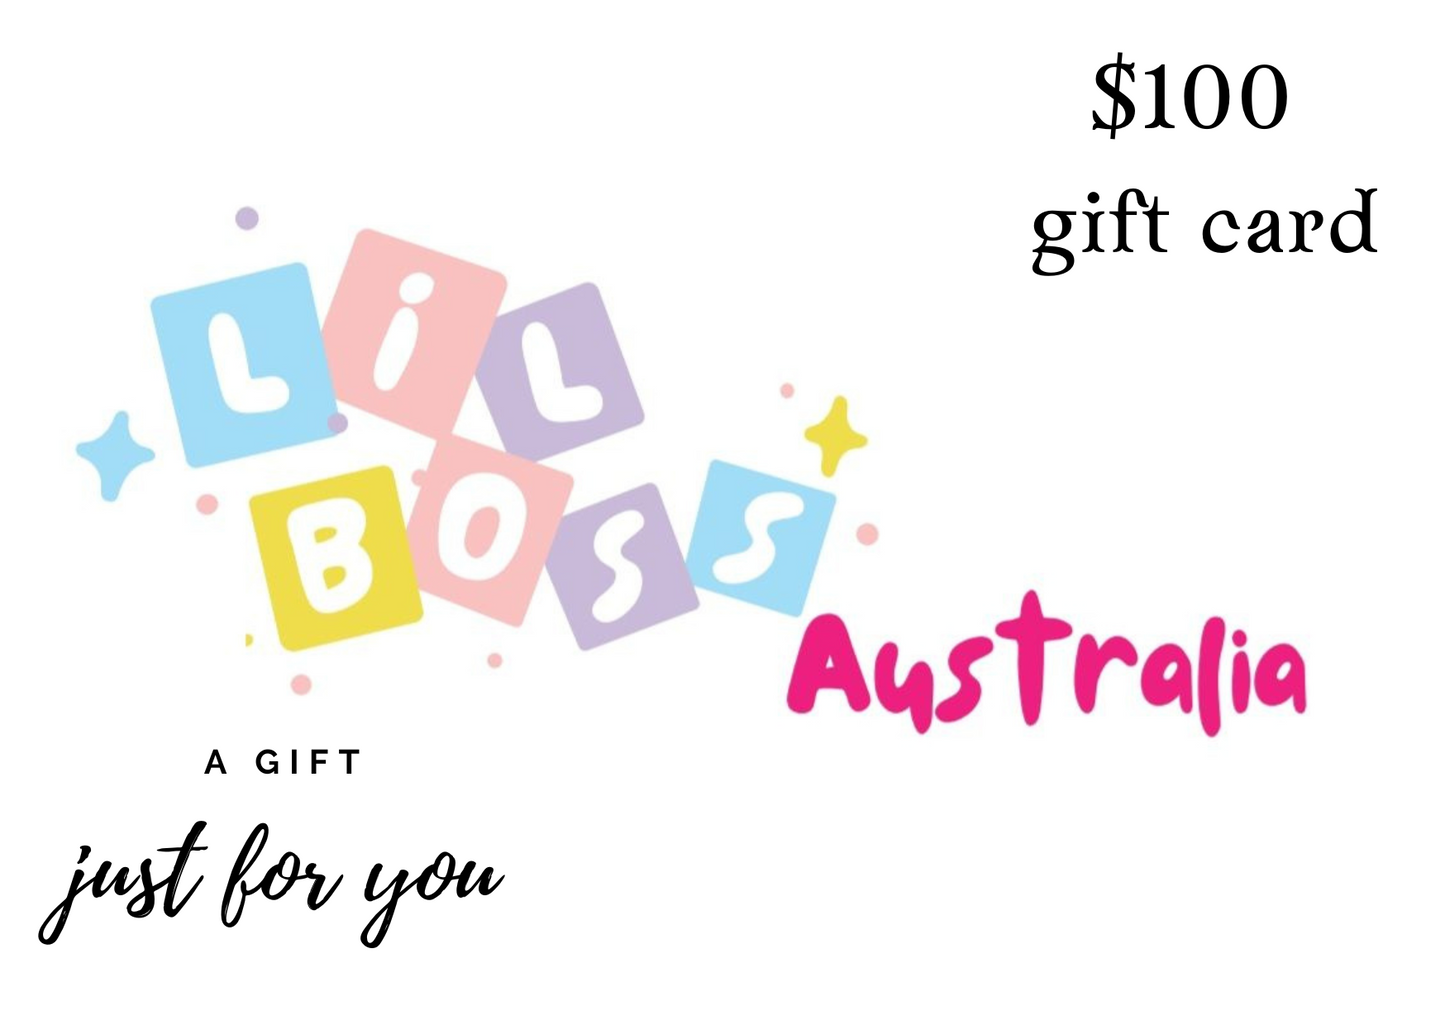 Lil Boss Australia gift cards